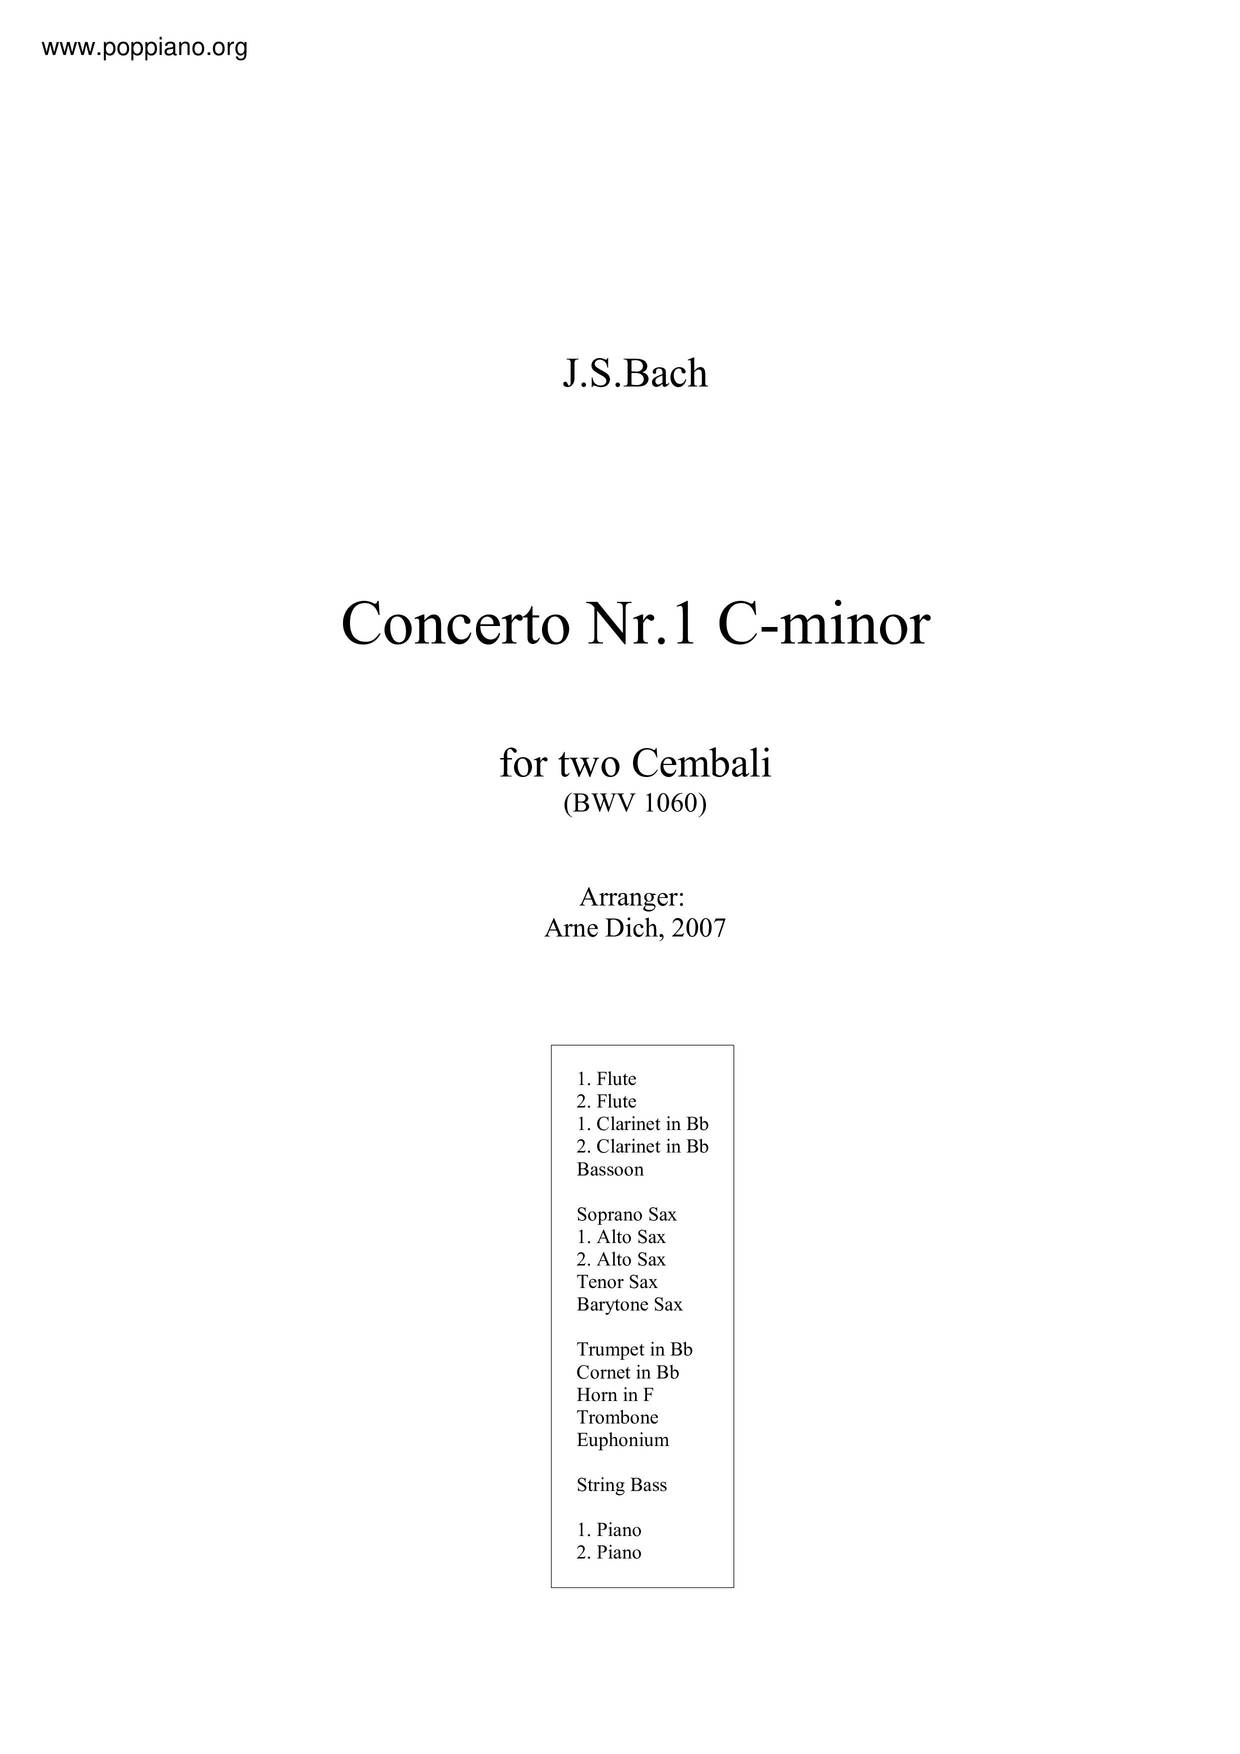 Concerto For 2 Harpsichords In C Minor, BWV 1060琴譜